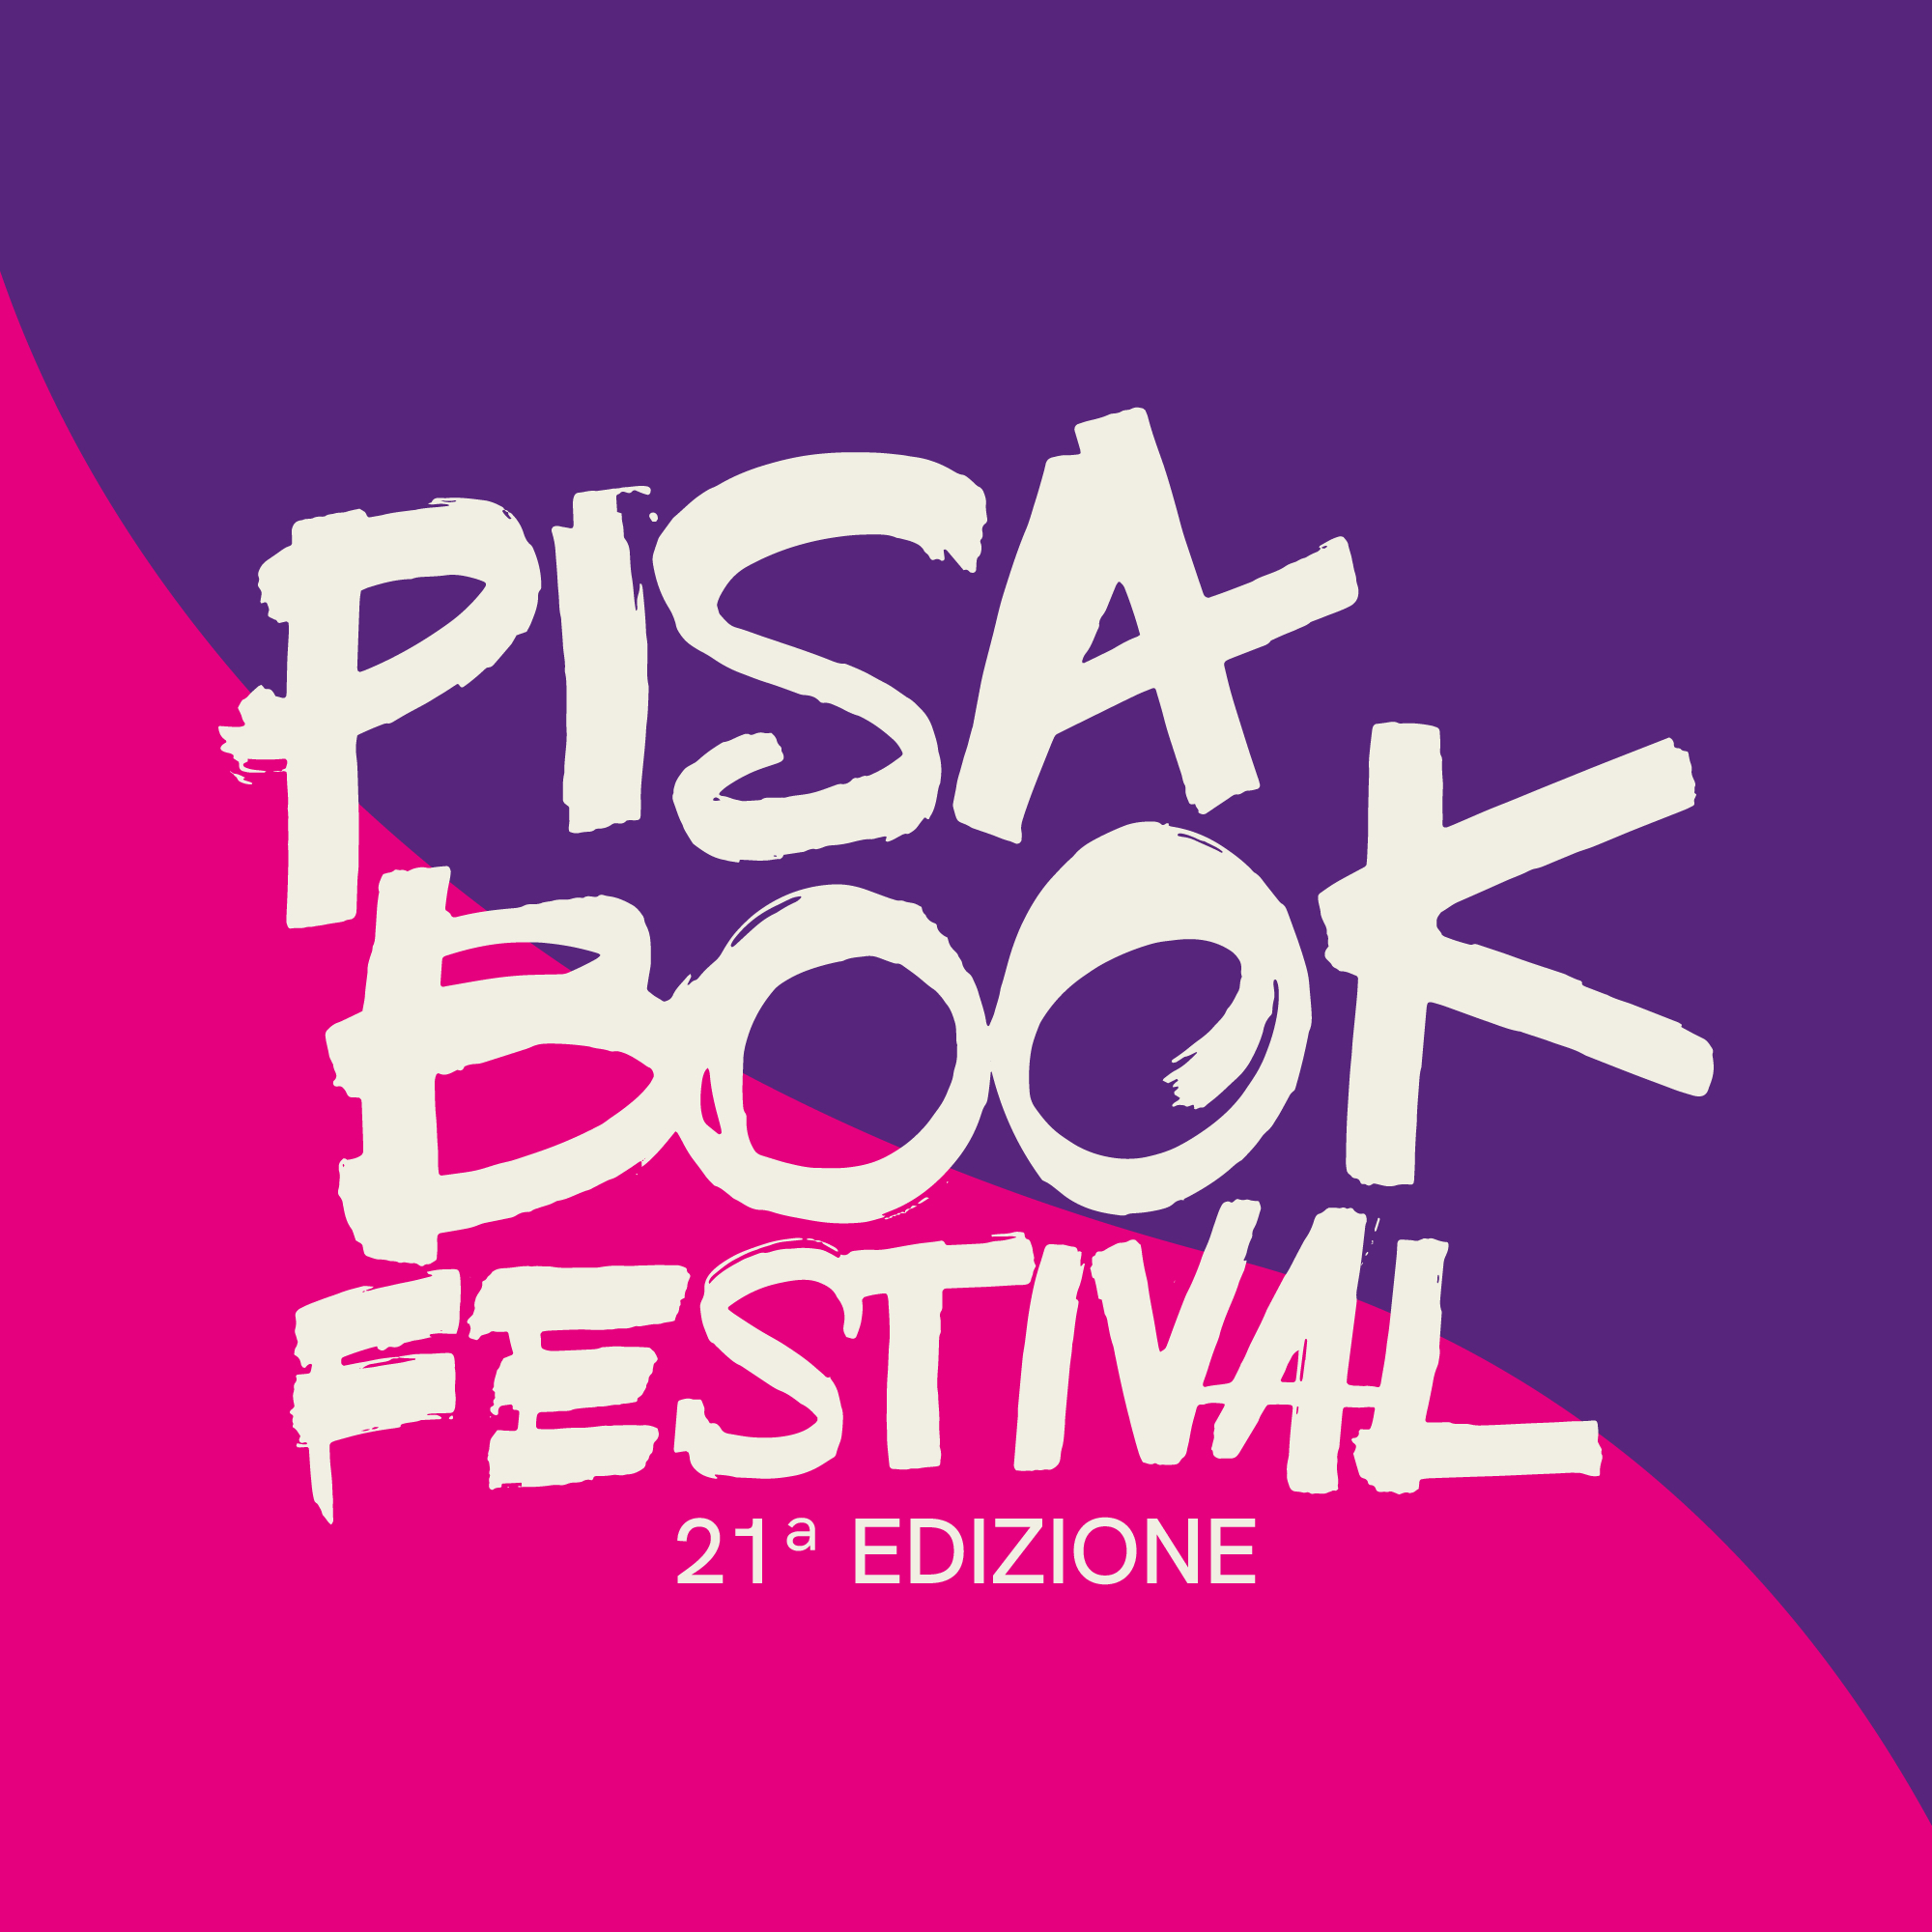 Apre i battenti il XXI Pisa Book Festival: un’edizione dedicata alle donne 